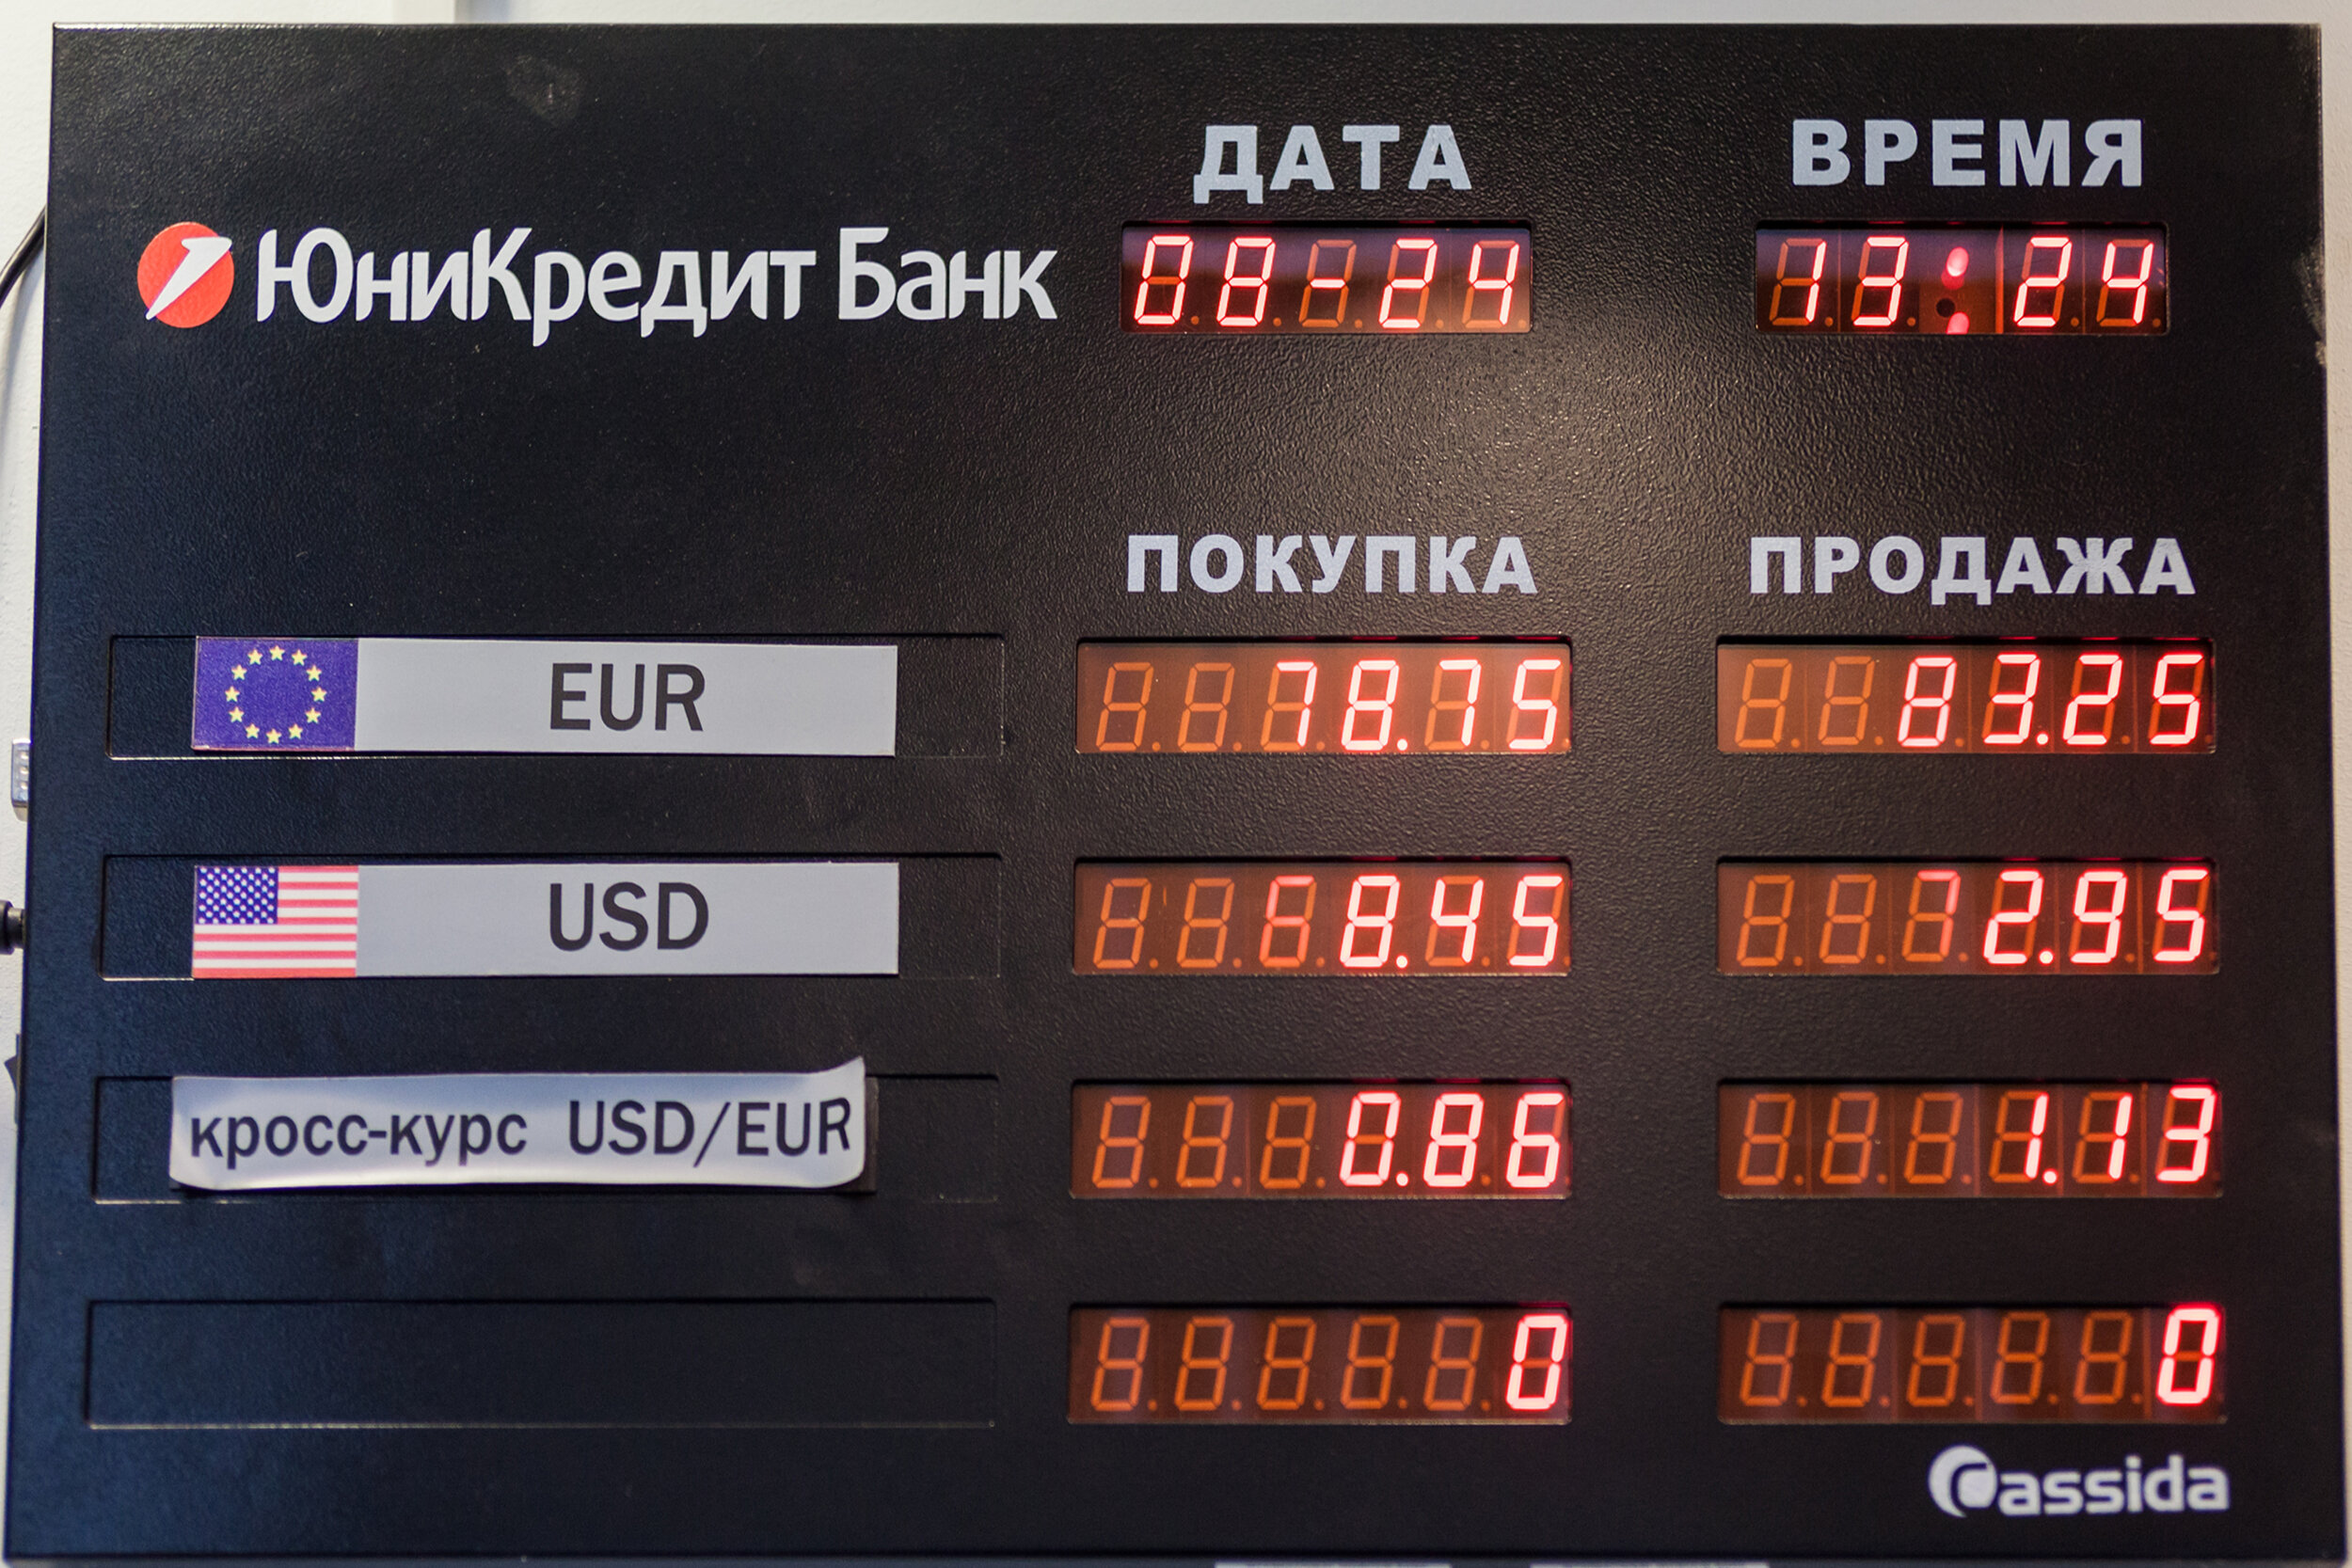 Обмен валюты владивосток сегодня